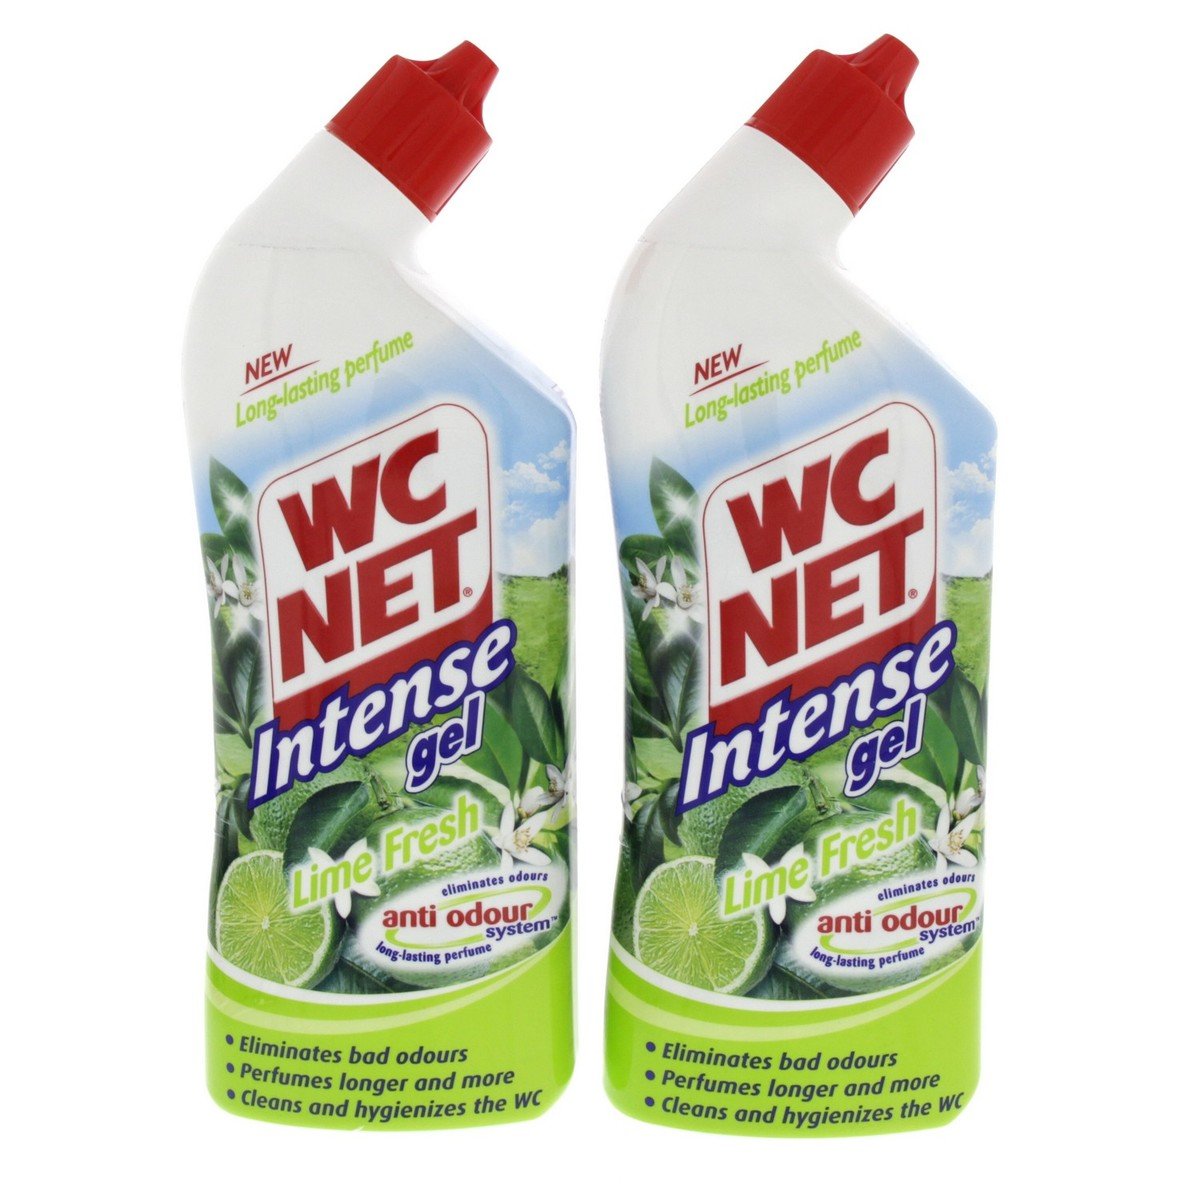 WC NET Intence Gel Lime Fresh 750ml x 2pcs